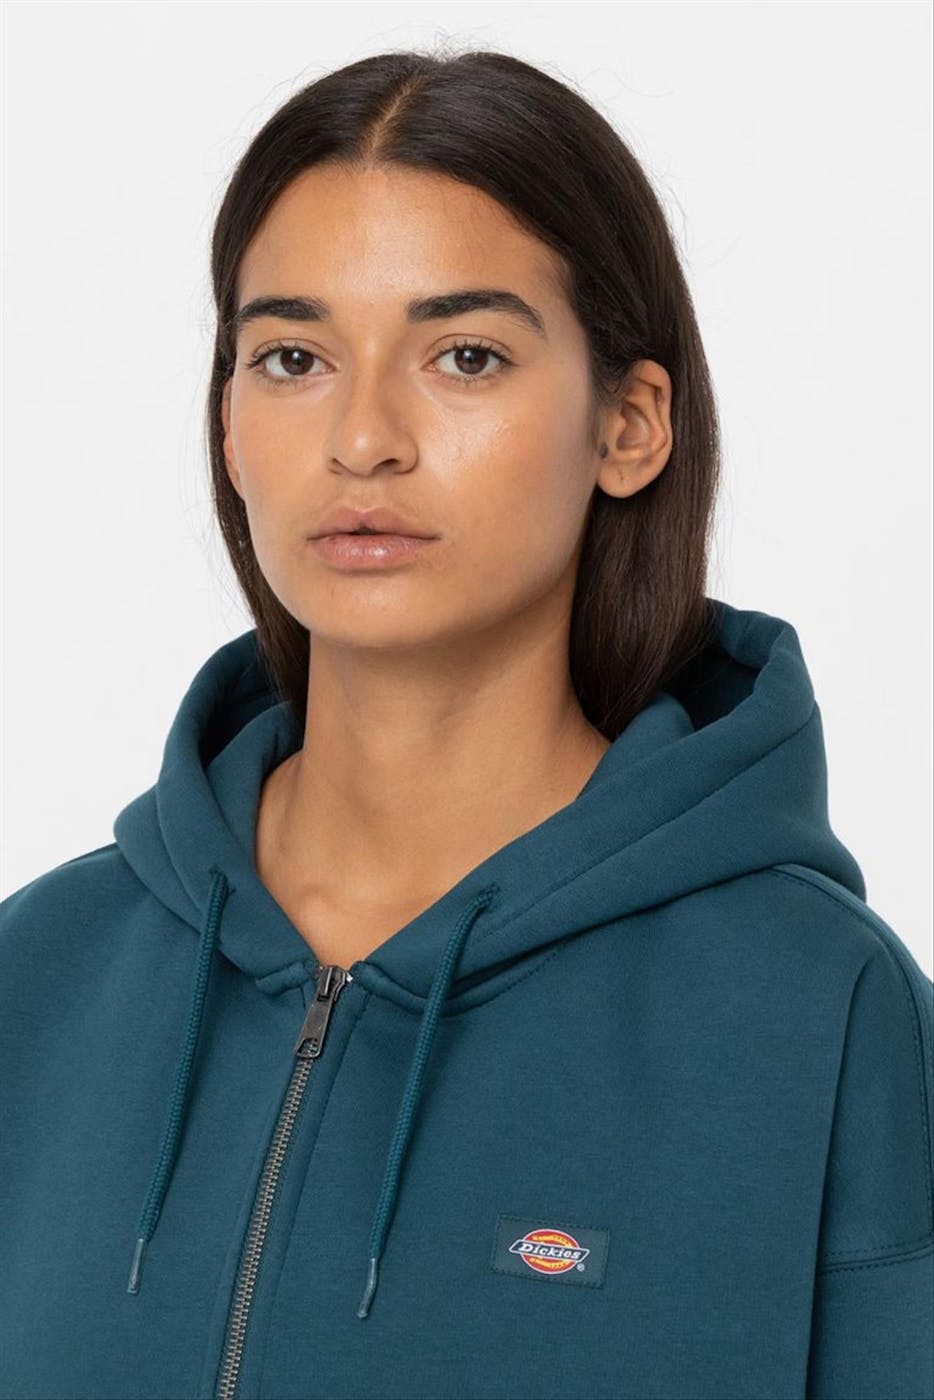 Dickies - Groenblauwe Oakport Zip hoodie